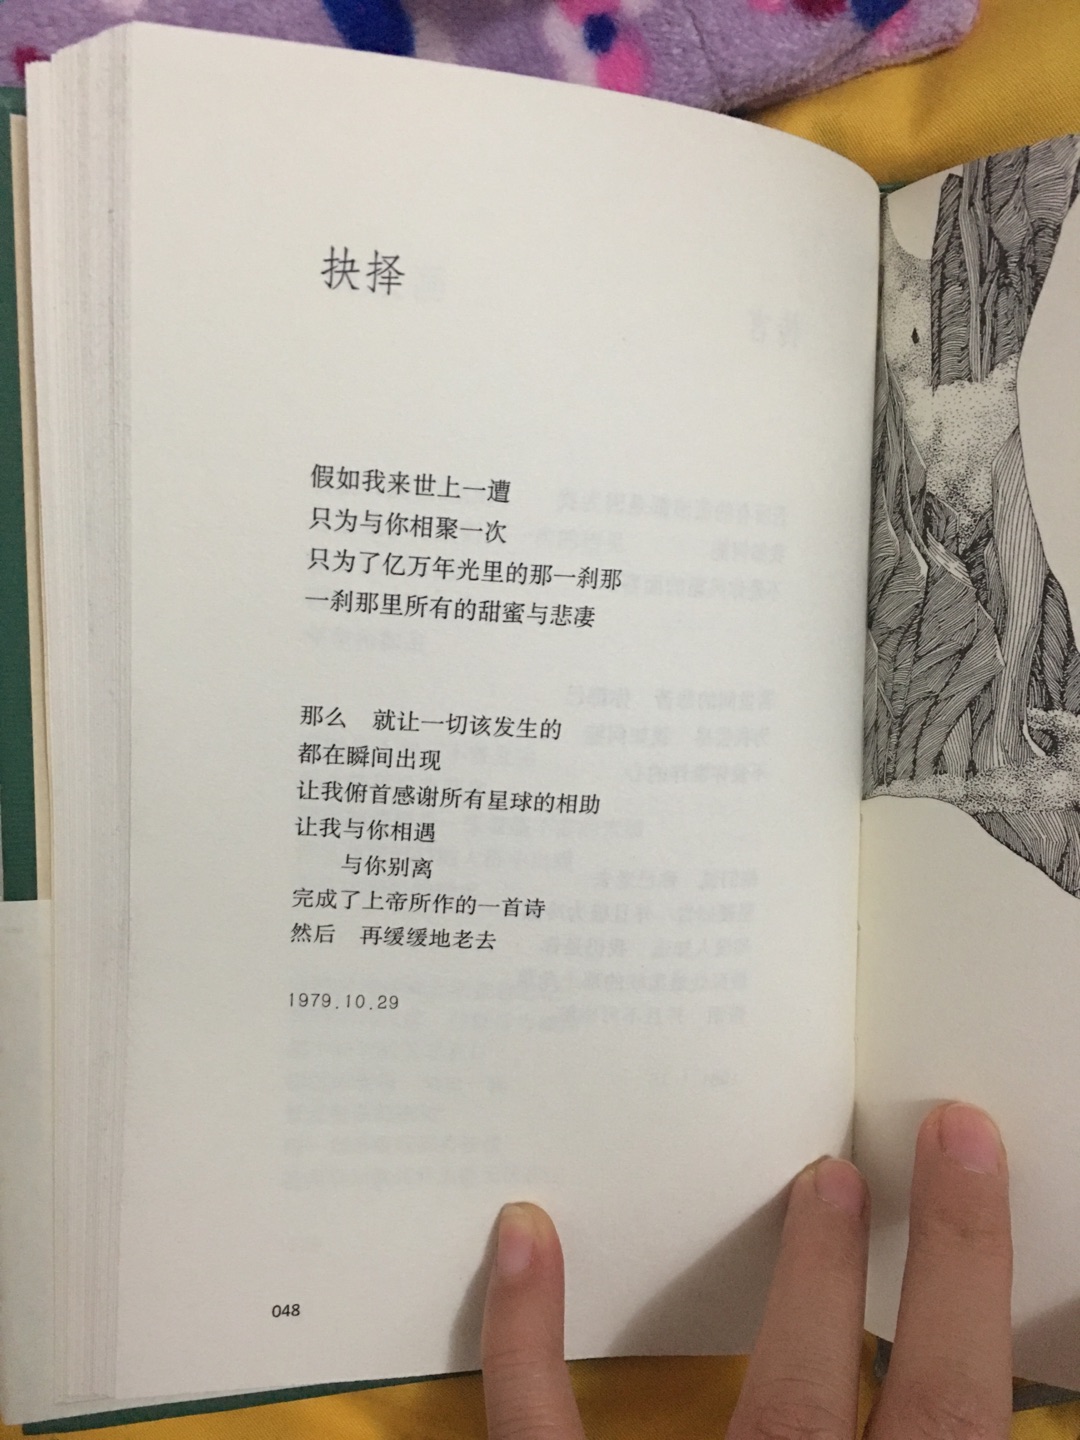 早年看过席慕蓉的诗，还有工笔插图，很是精致。这次买了全集，想细细品读作为画家的才女别具一格的作品。